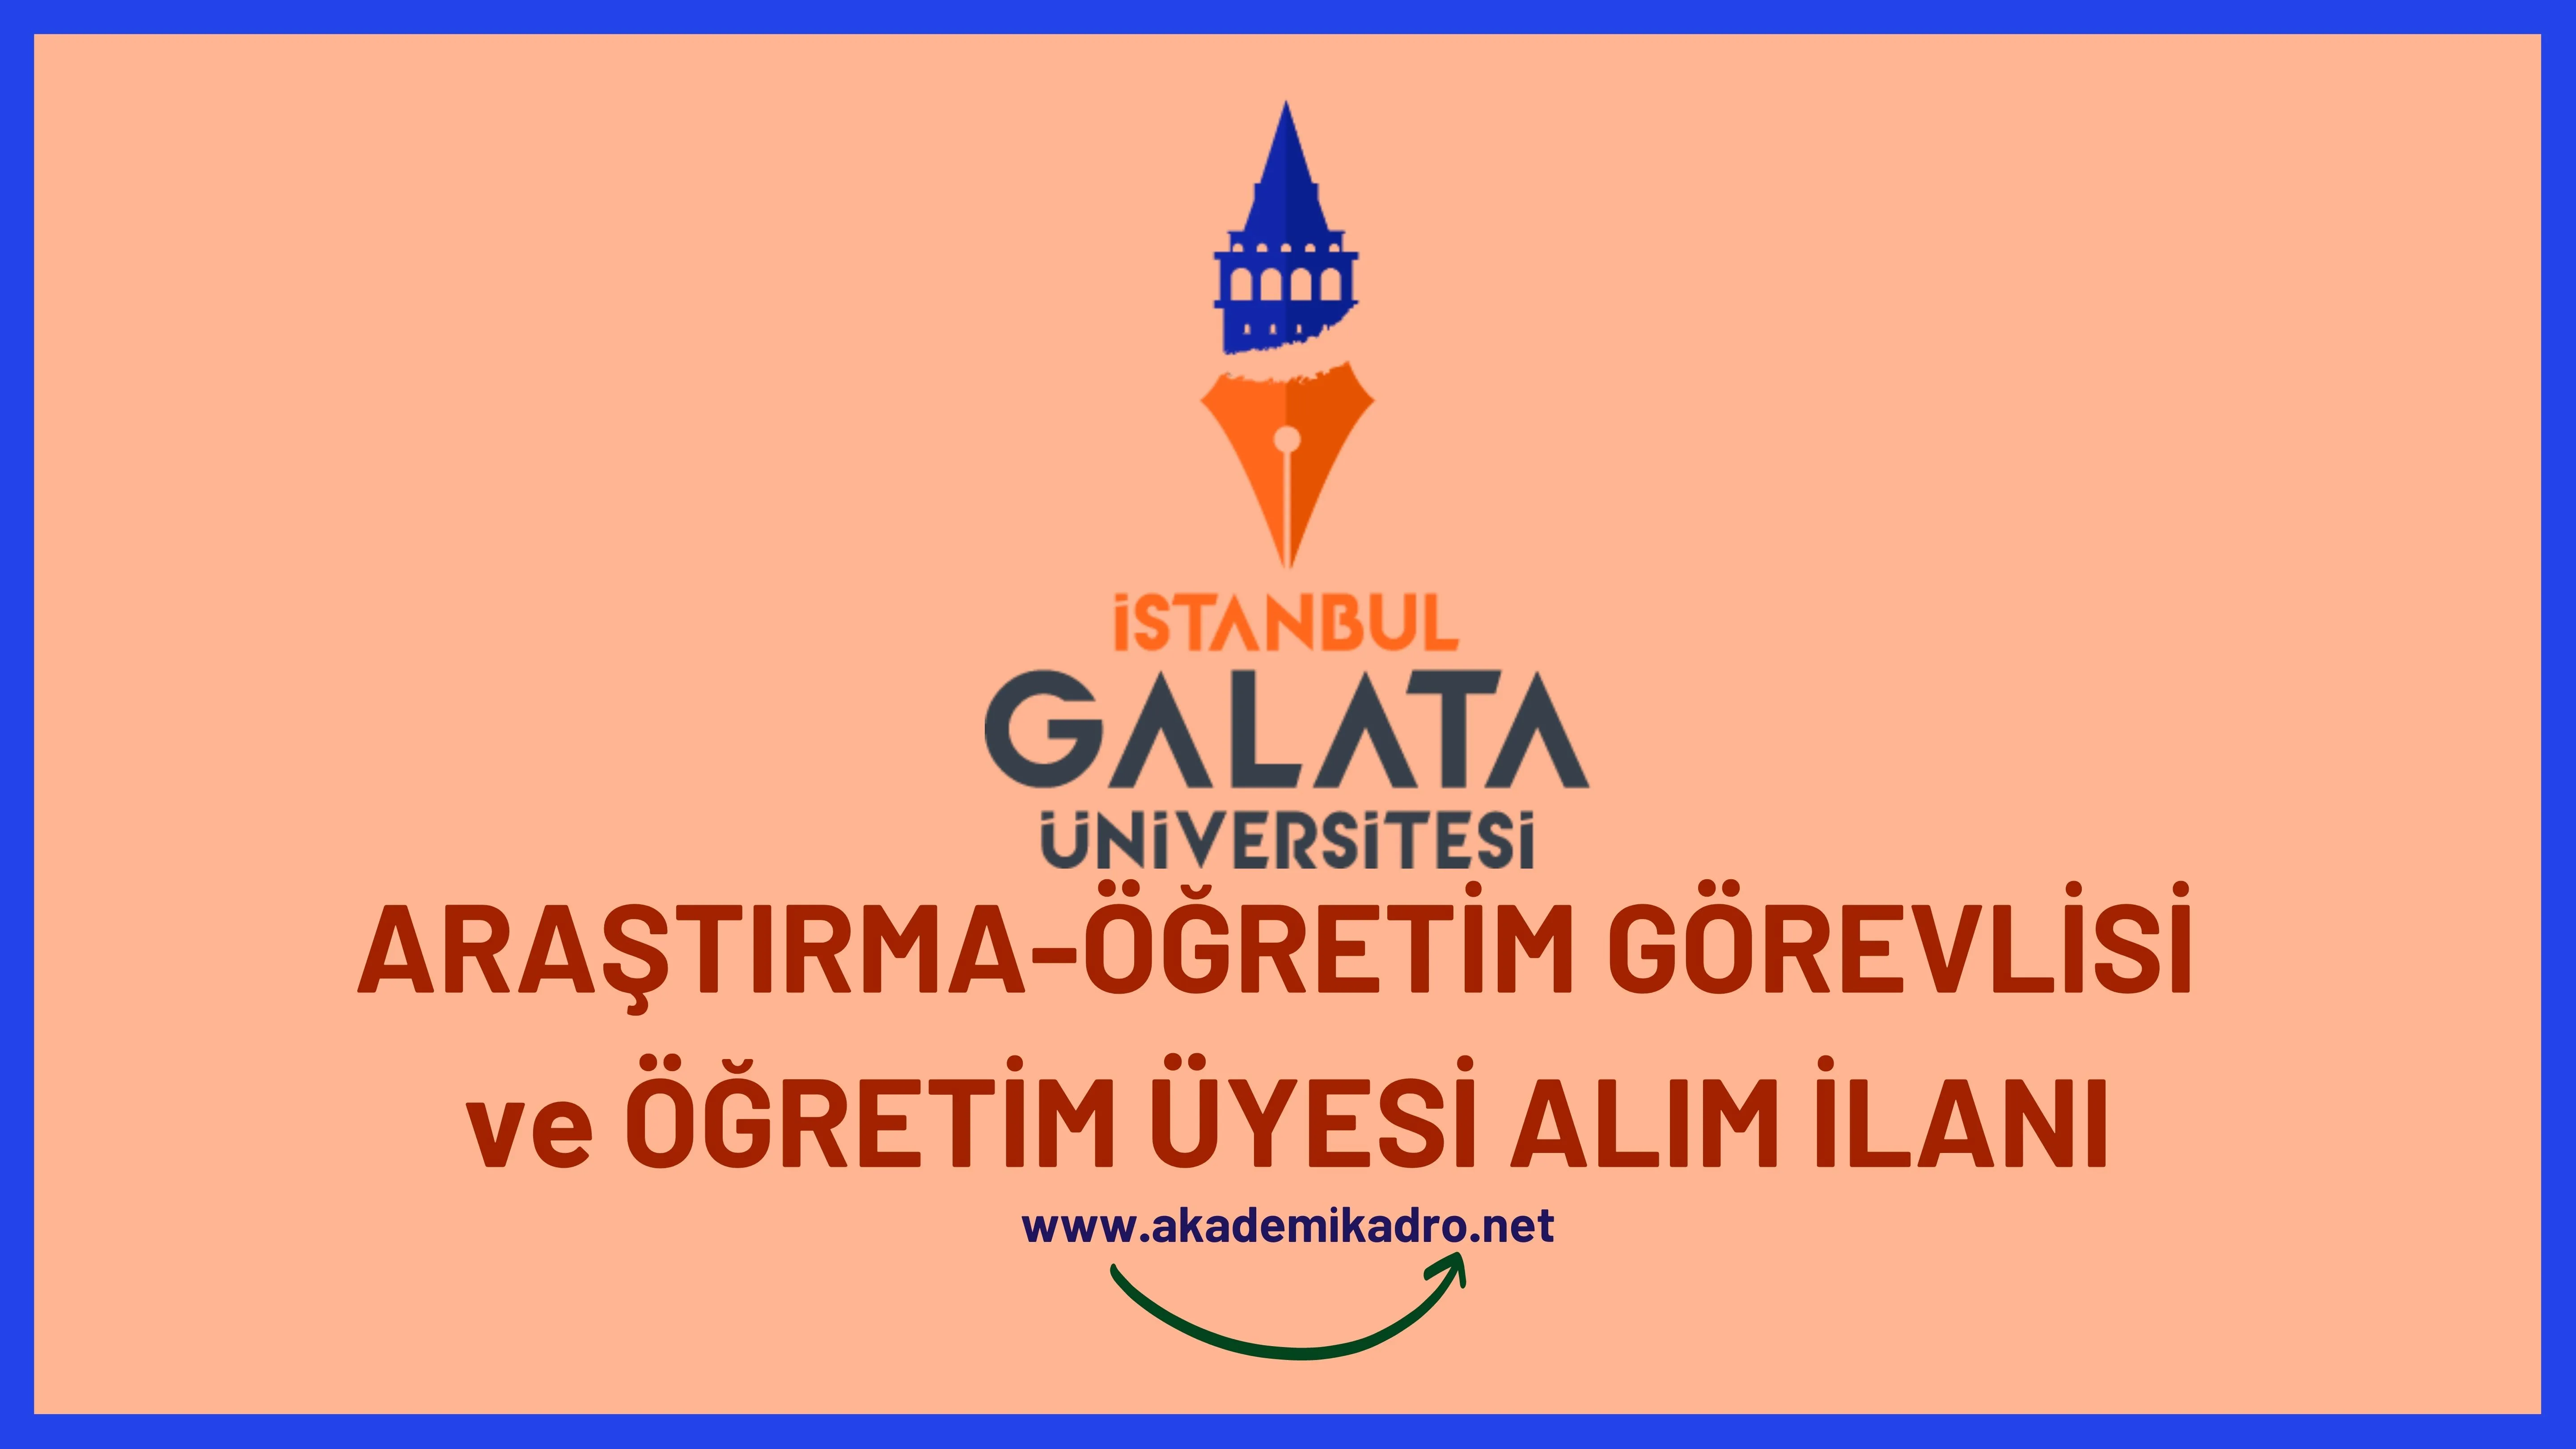 İstanbul Galata Üniversitesi 3 Araştırma görevlisi, 2 Öğretim görevlisi ve 29 Öğretim üyesi alacak.